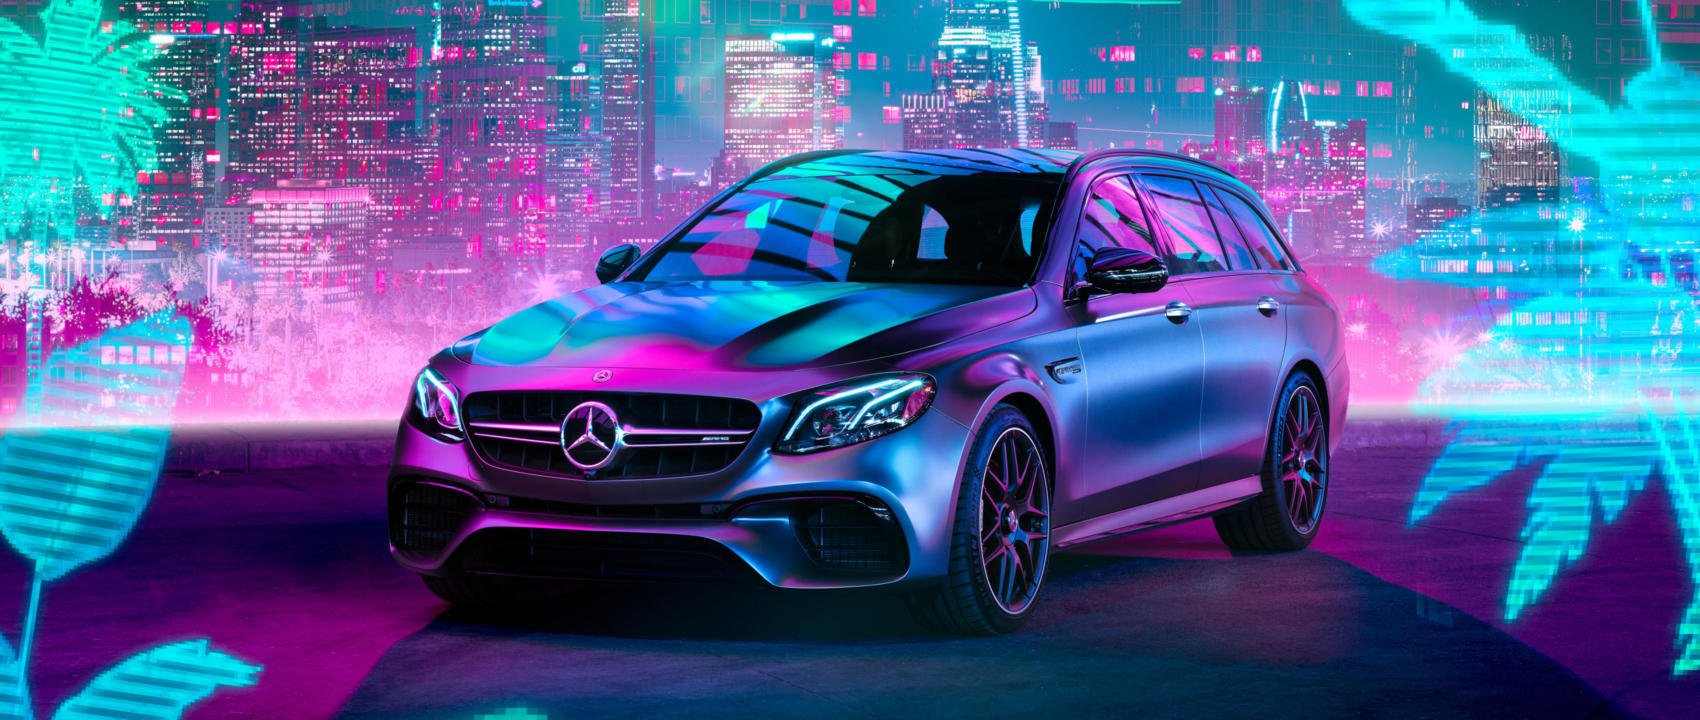 Mercedes Benz Candy! Get Your New Wallpaper Here: #MBsocialcar By Richard Thompson [Kraftstoffverbrauch Kombiniert 10.8 L 100km. CO2 Emissionen Kombiniert: 246 G Km. ]